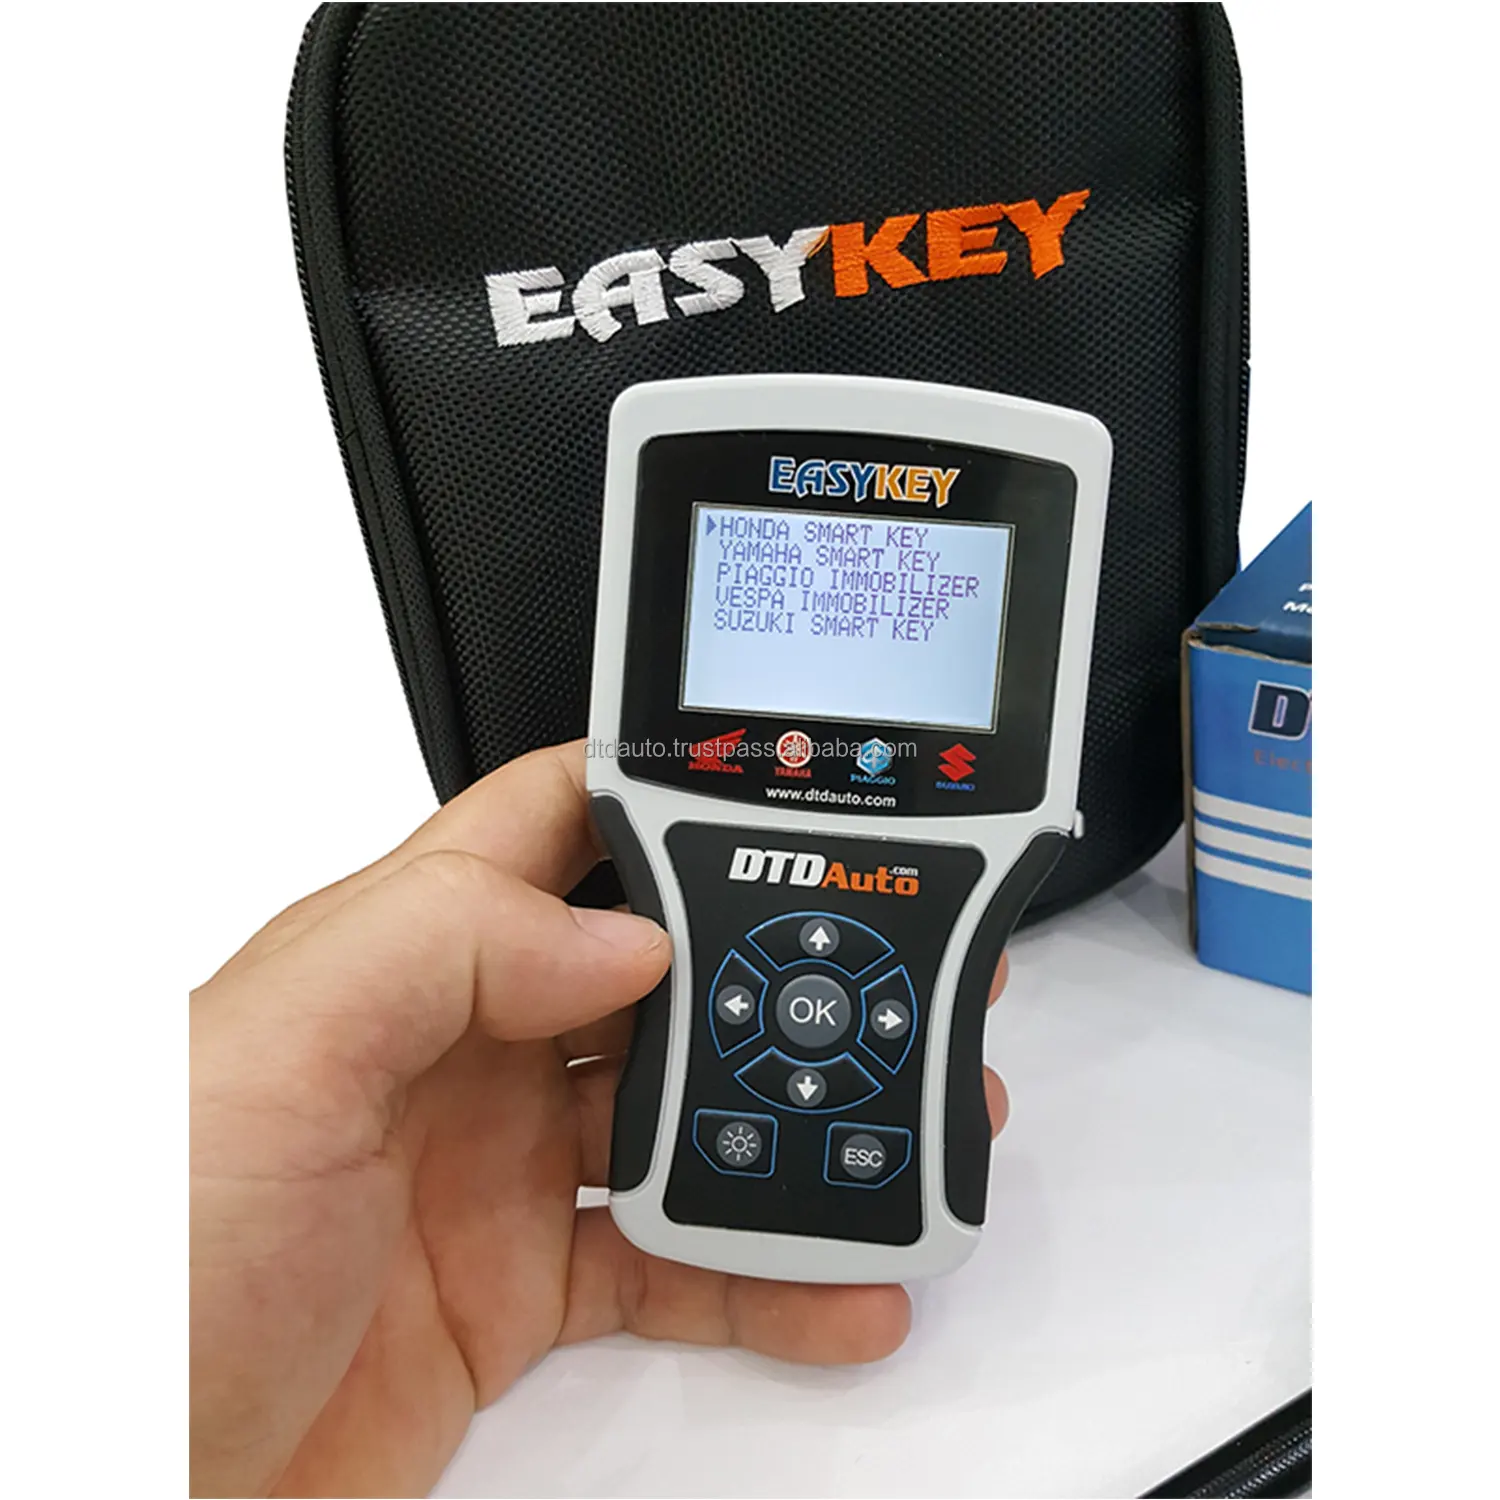 Easykey 5-Lập trình viên chìa khóa thông minh Xe Máy phiên bản mới nhất chính thức đã được phát hành và cập nhật miễn phí, nhiều chức năng mới